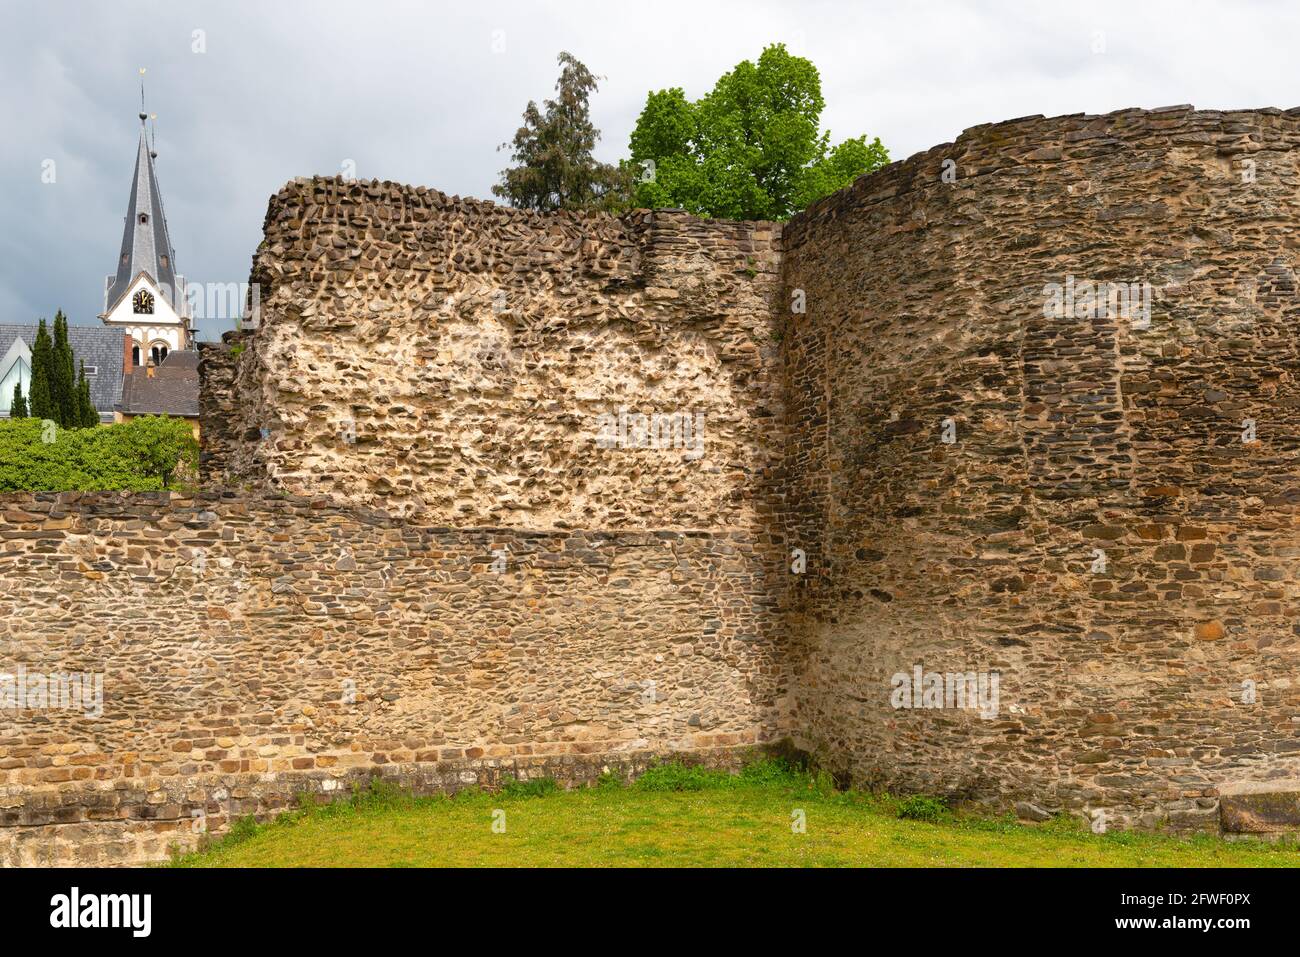 Resti della fortificazione romana Bodobrica Romana datata IV secolo d.C., Boppard, Renania-Palatinato, Germania Foto Stock